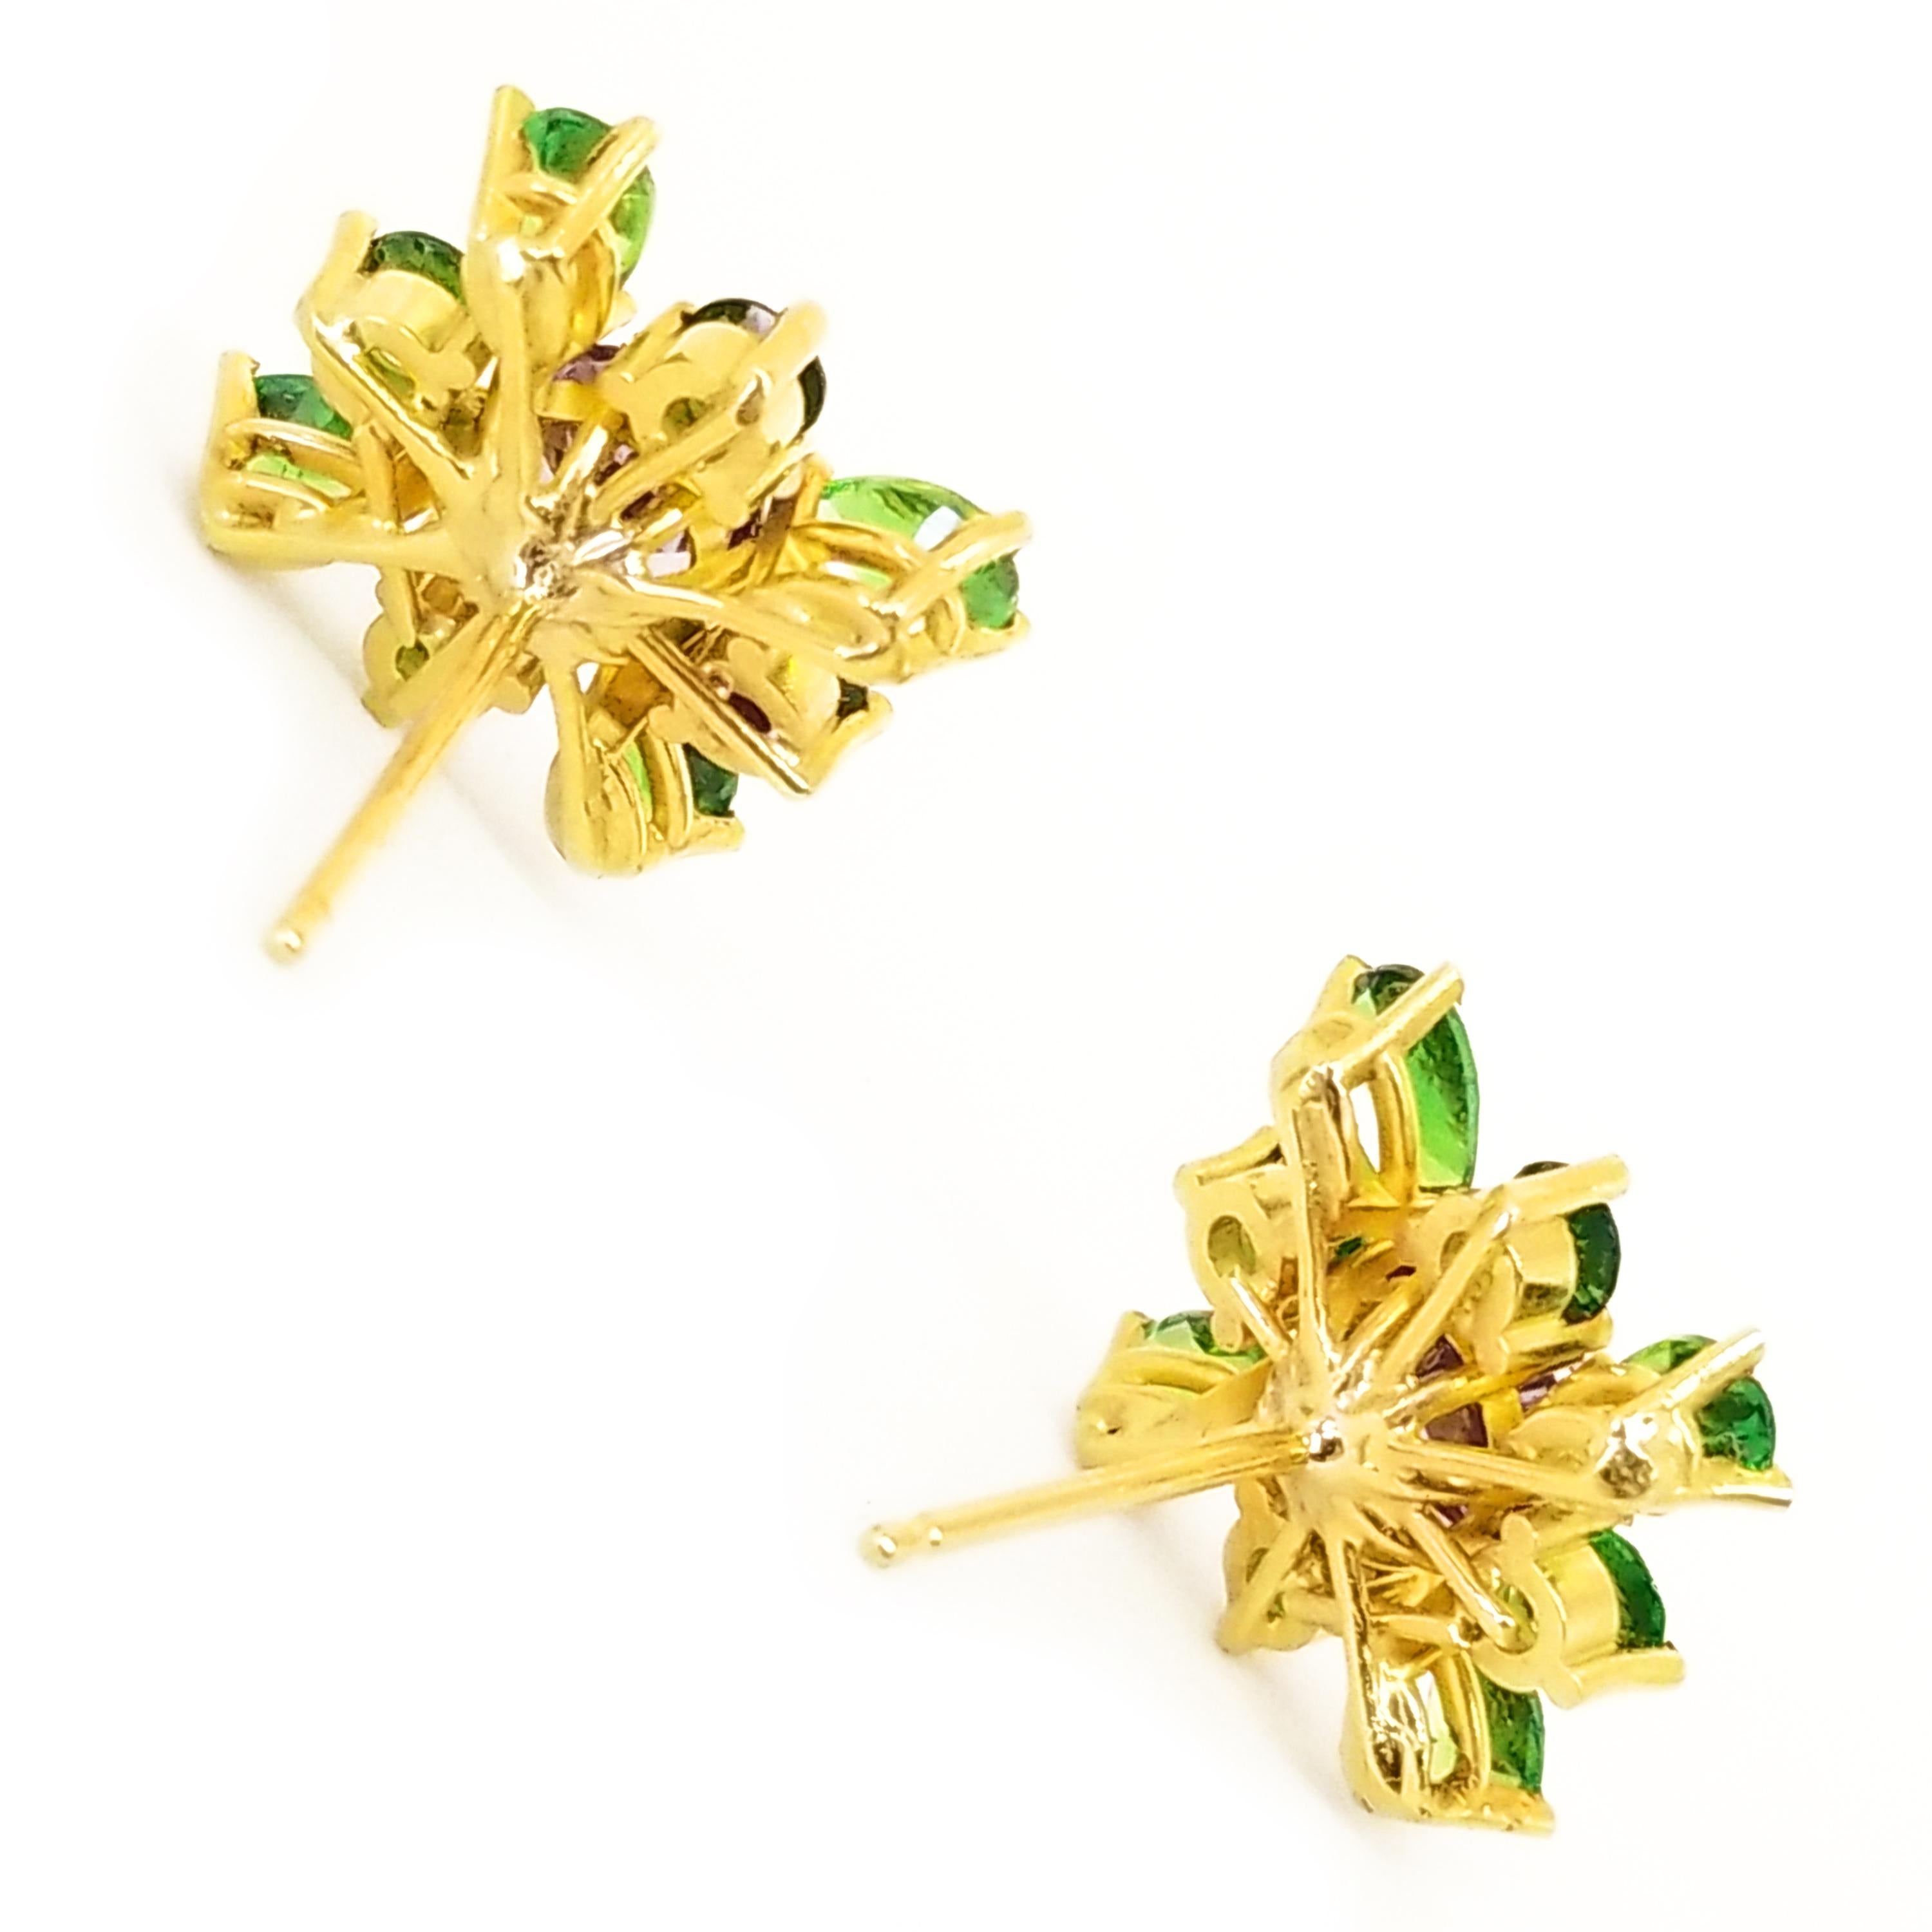 Lavender Spinel Green Tsavorite Garnet Floret Cluster Earrings 18 Karat Gold 1